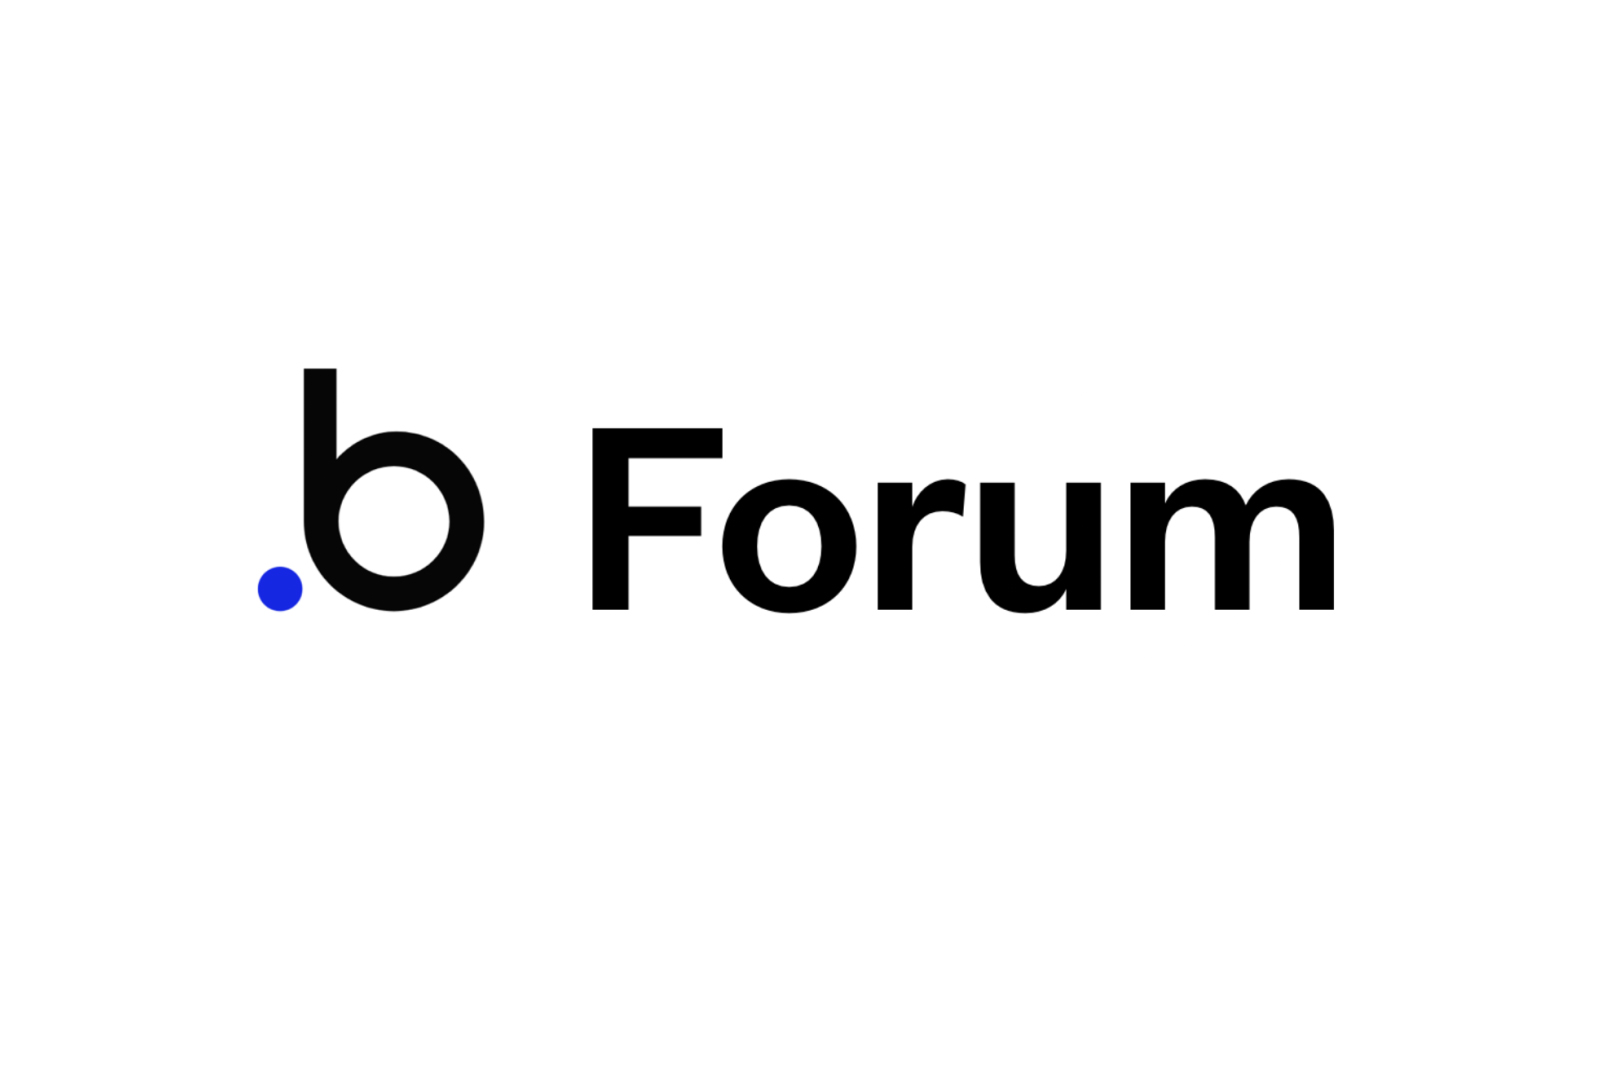 The Bubble.io Forum